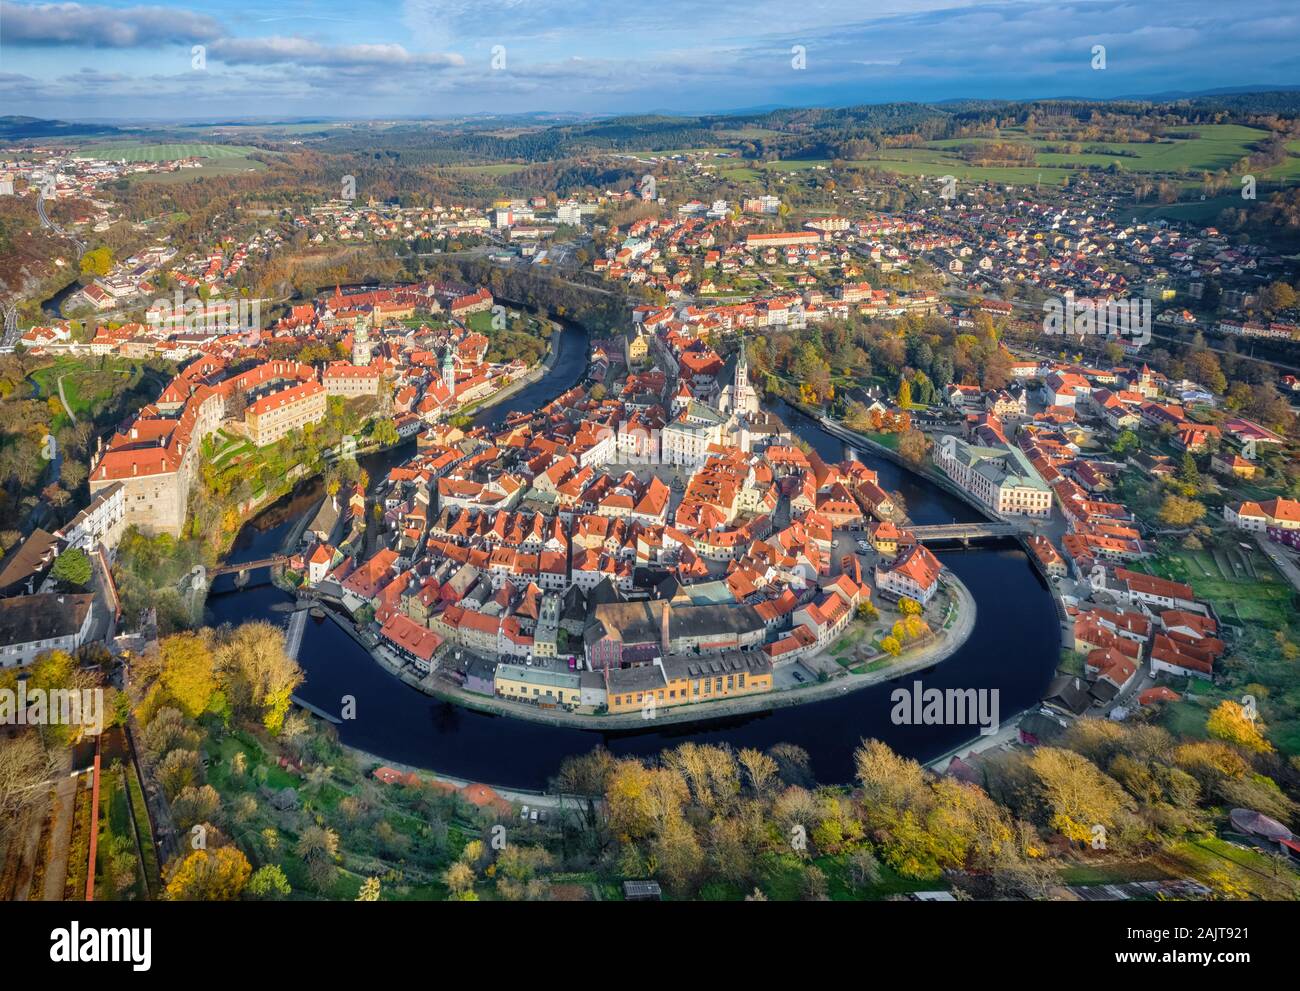 Luftaufnahme von Cesky Krumlov - historische europäische Stadt durch Biegung des Flusses Vltava umgeben, Tschechische Republik Stockfoto